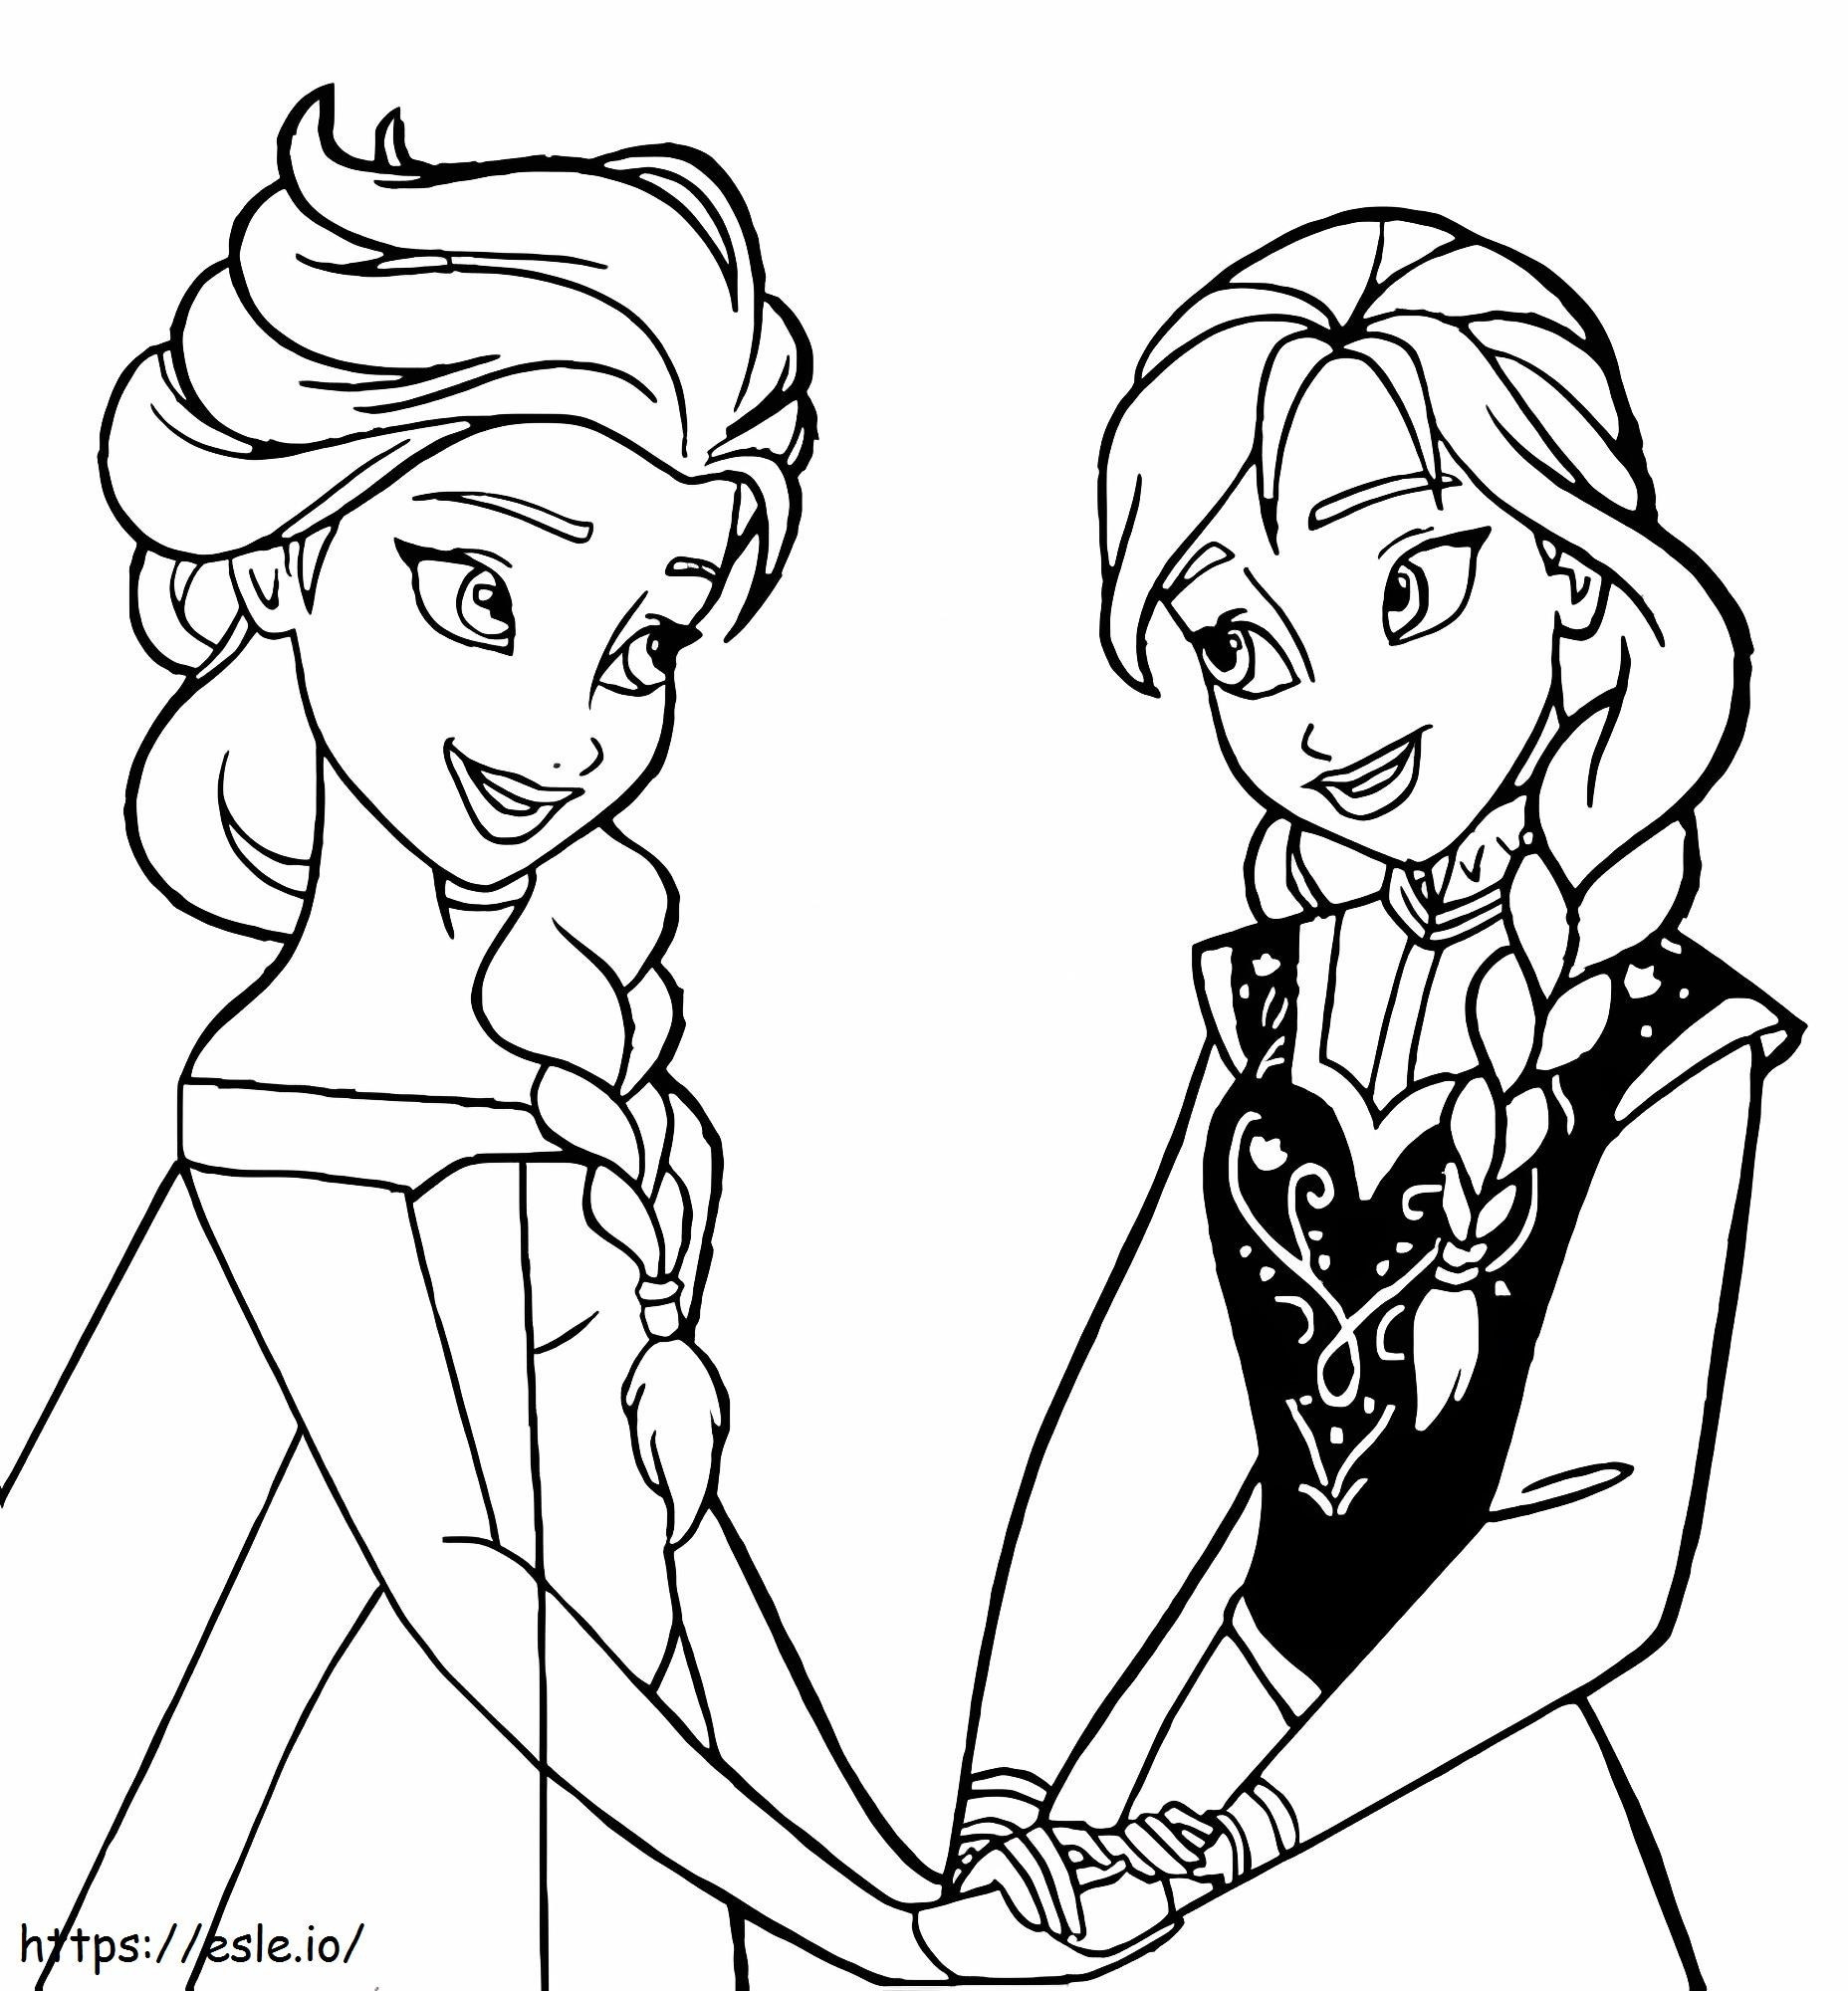 Elsa y Anna tomados de la mano para colorear